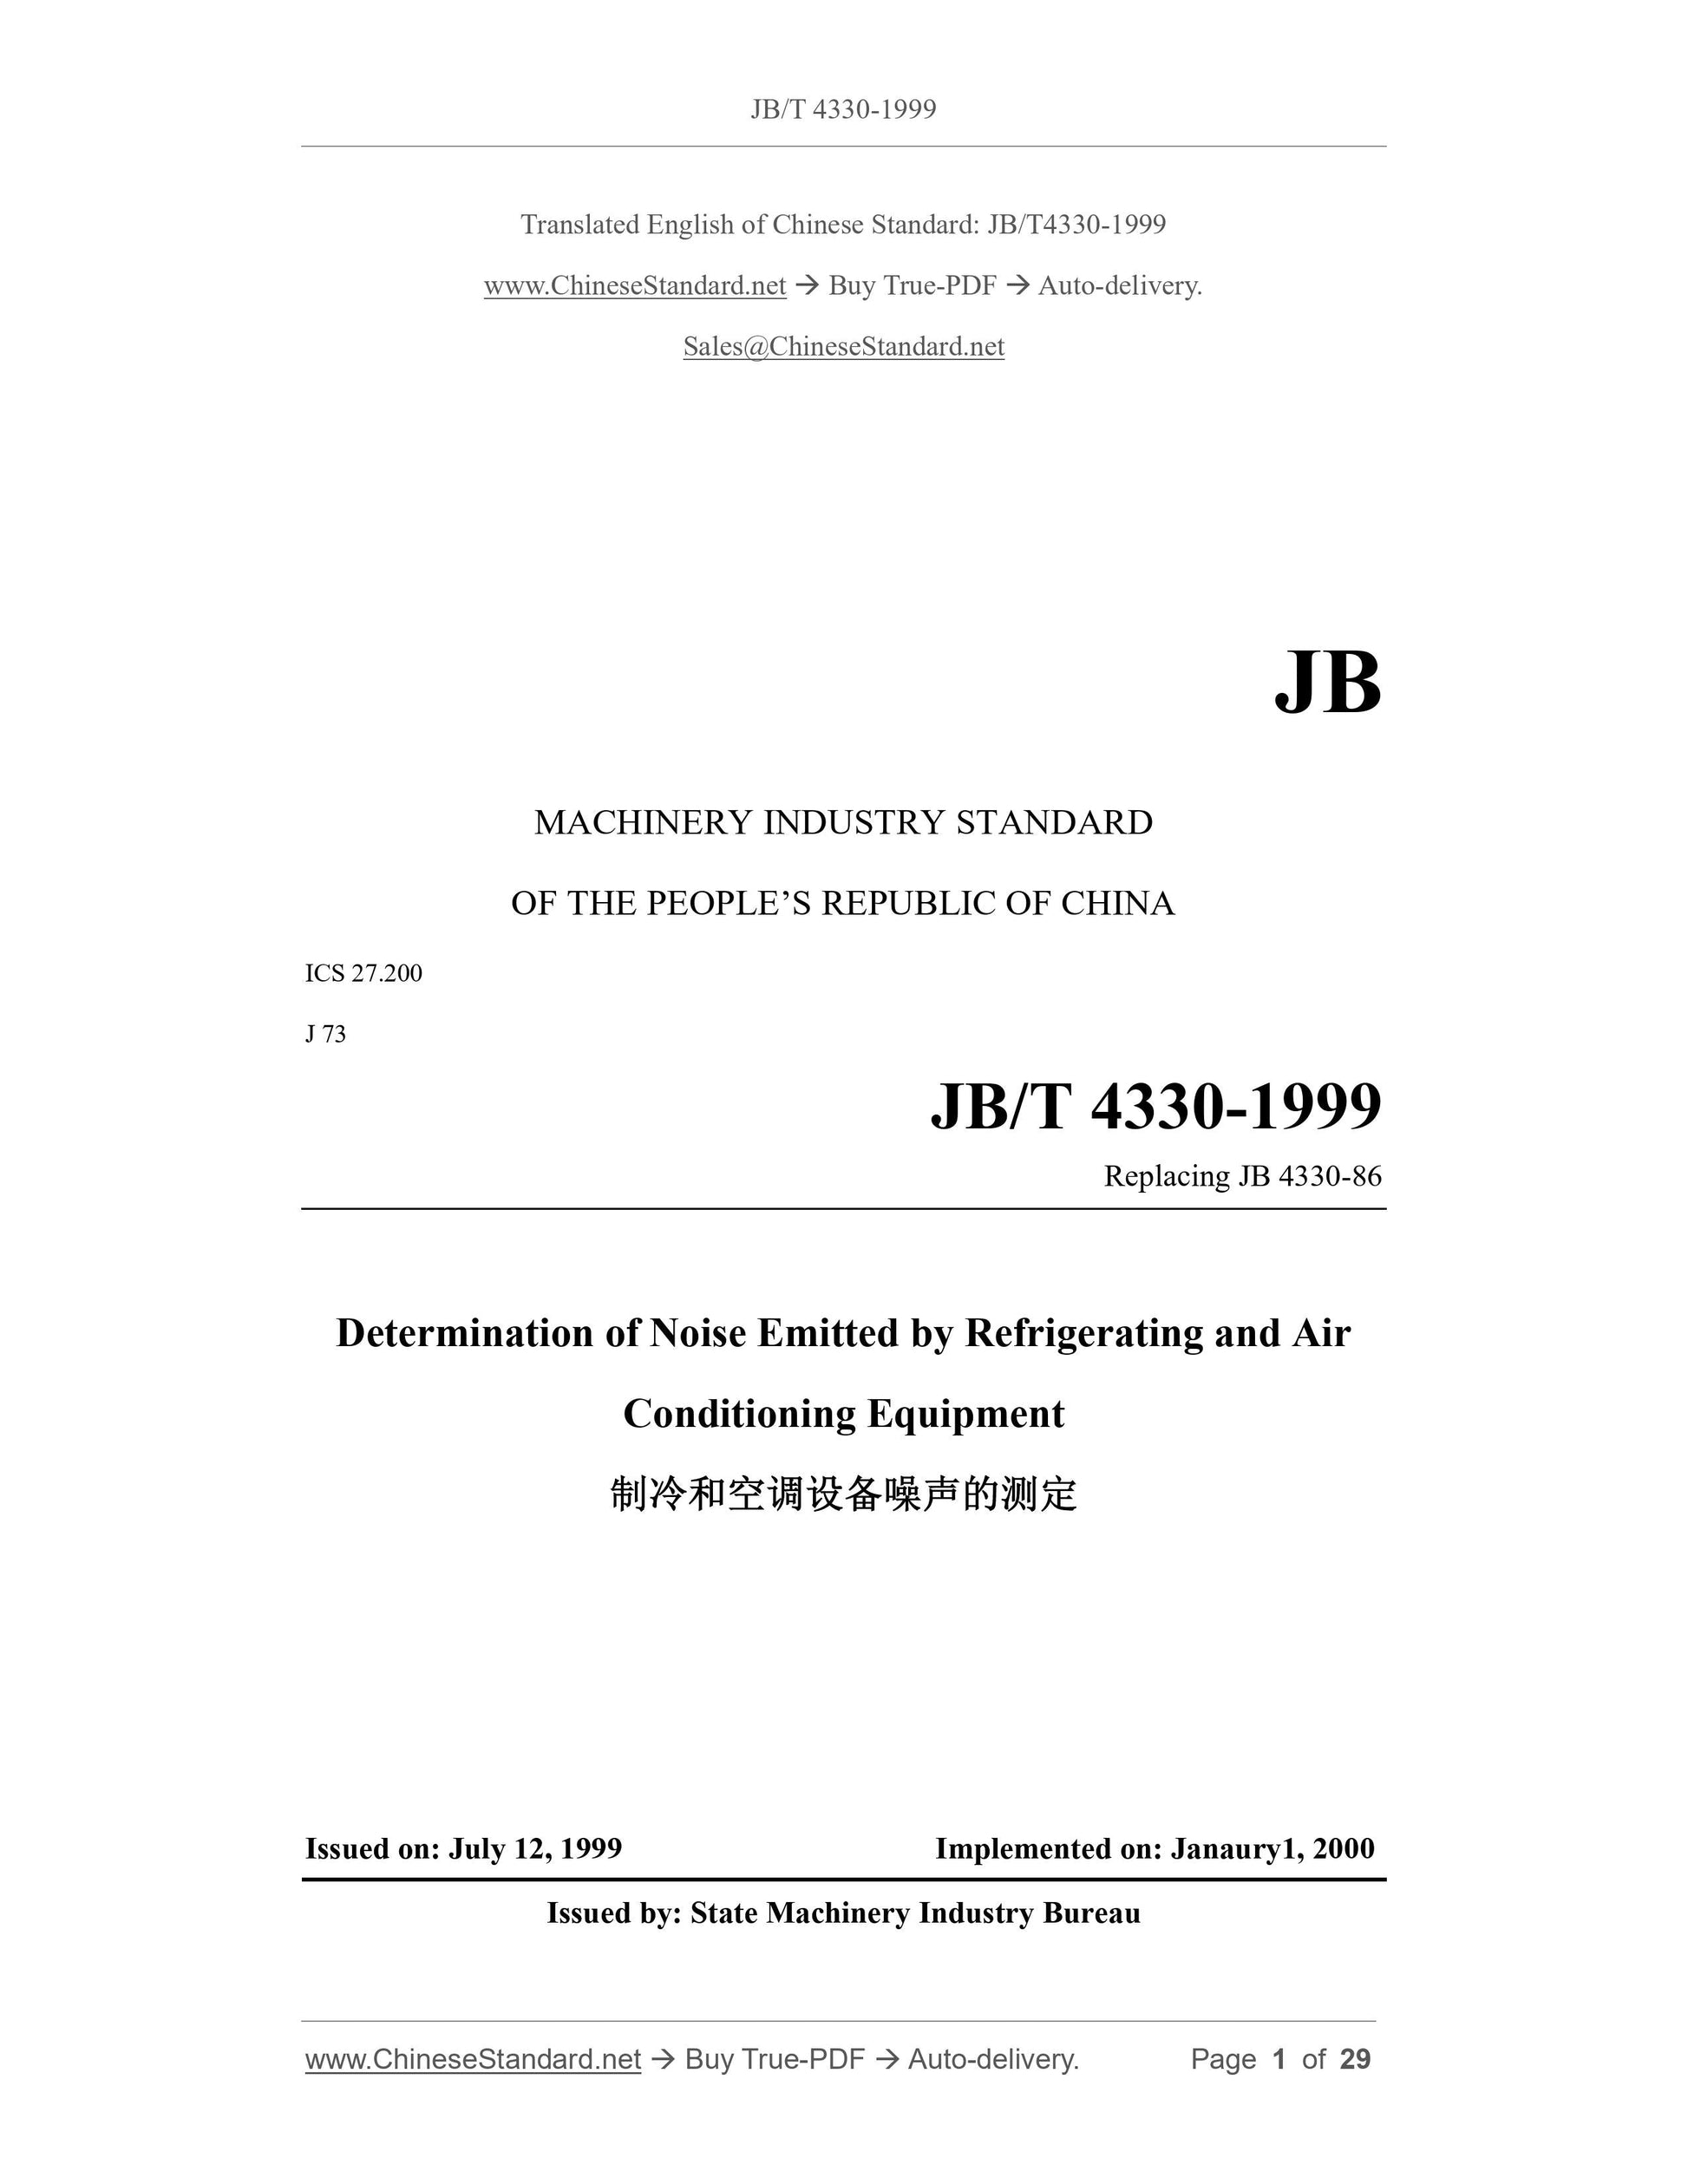 JB/T 4330-1999 Page 1